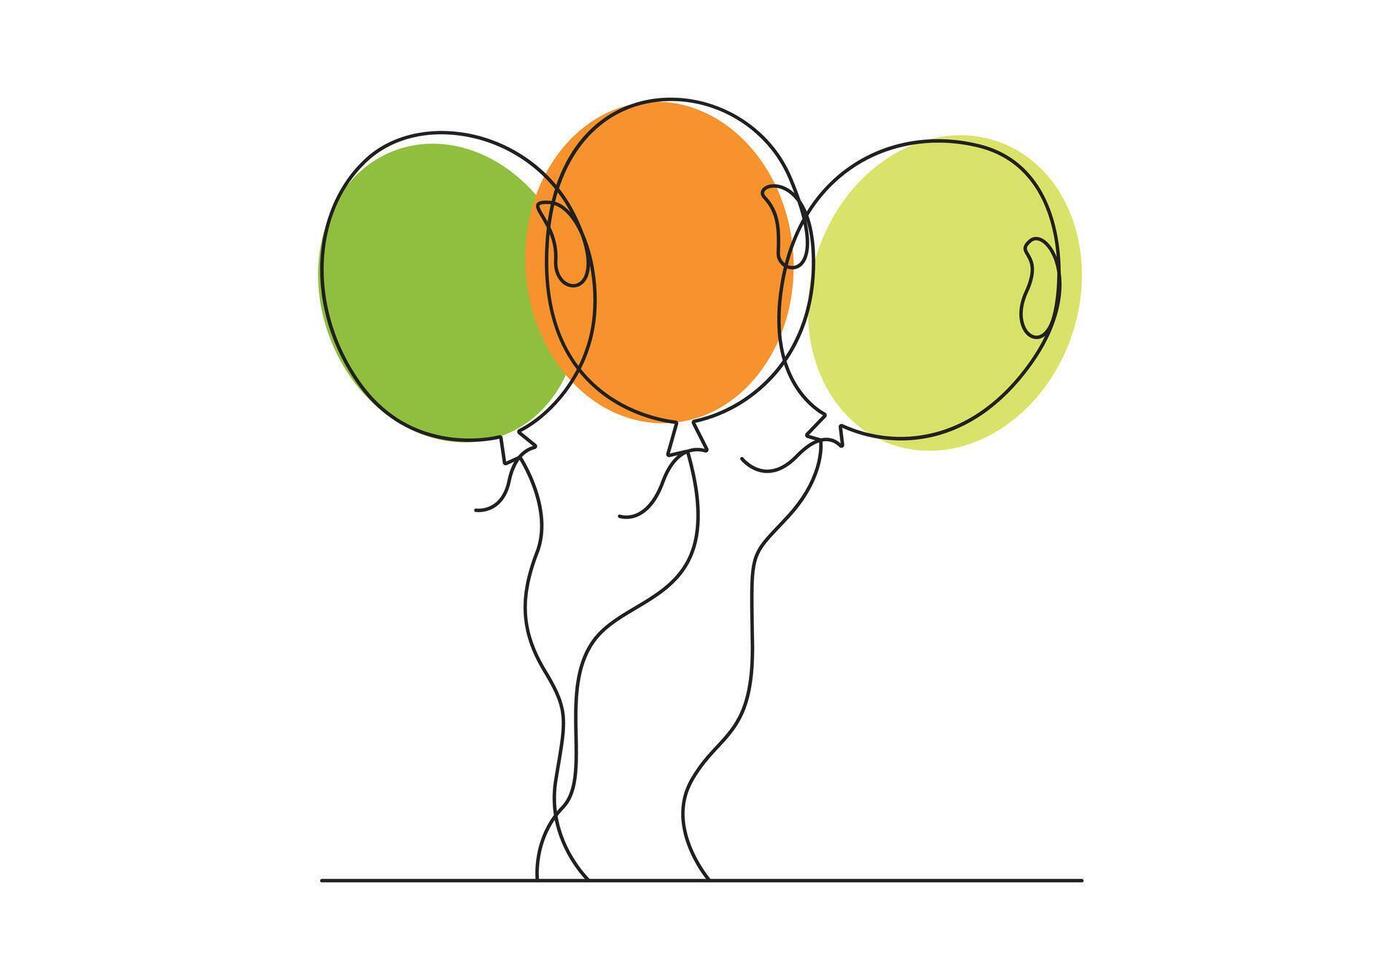 kontinuerlig ett linje teckning av ballong. födelsedag firande. digital illustration vektor